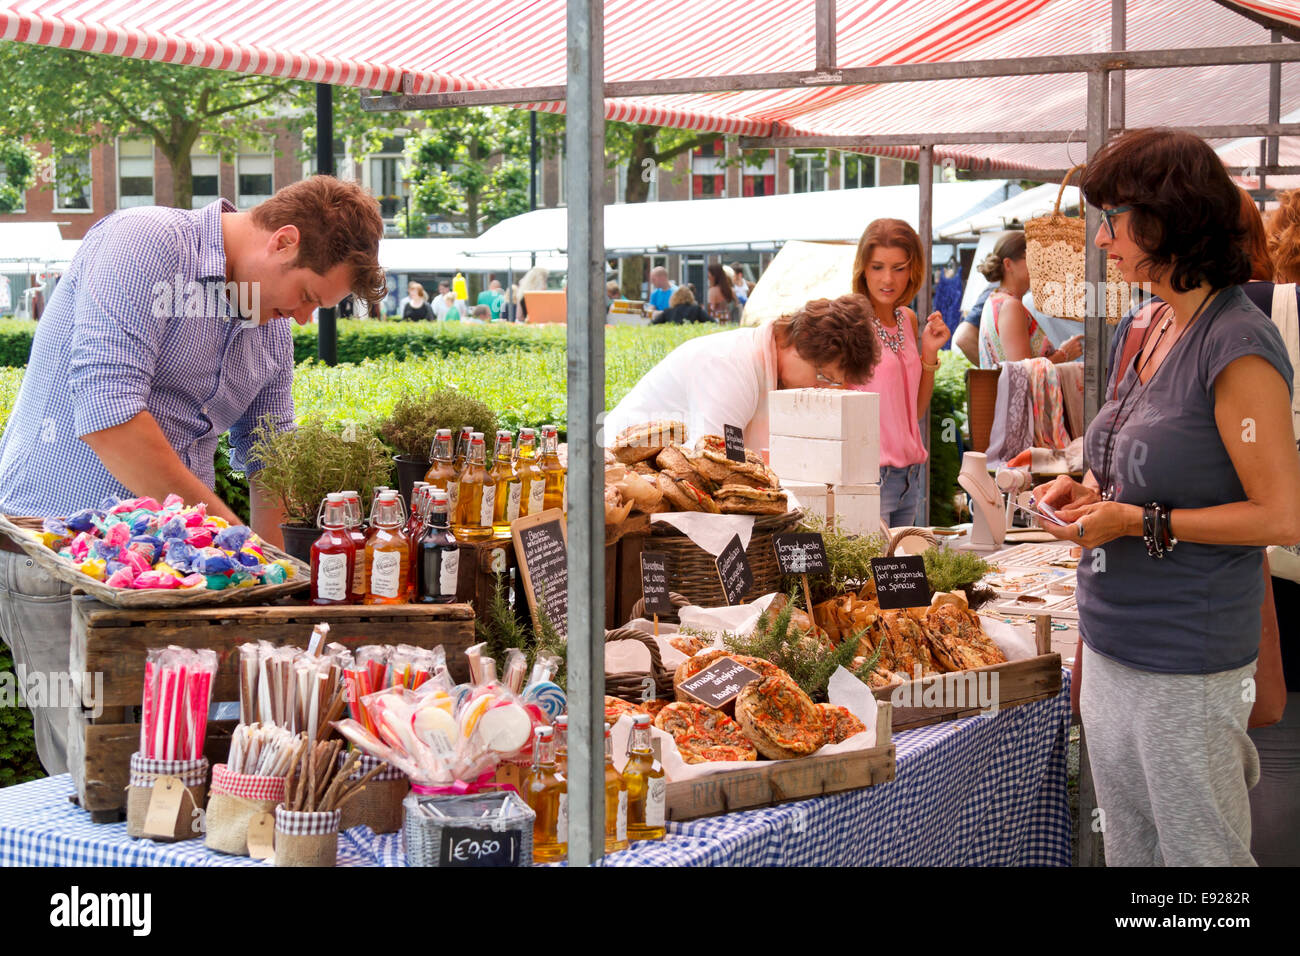 DORDRECHT, Paesi Bassi - 30 giugno 2013: Unidentified venditori e acquirenti potenziali nel mercato del cigno a Dordrecht. Il mercato dello stile di vita Foto Stock